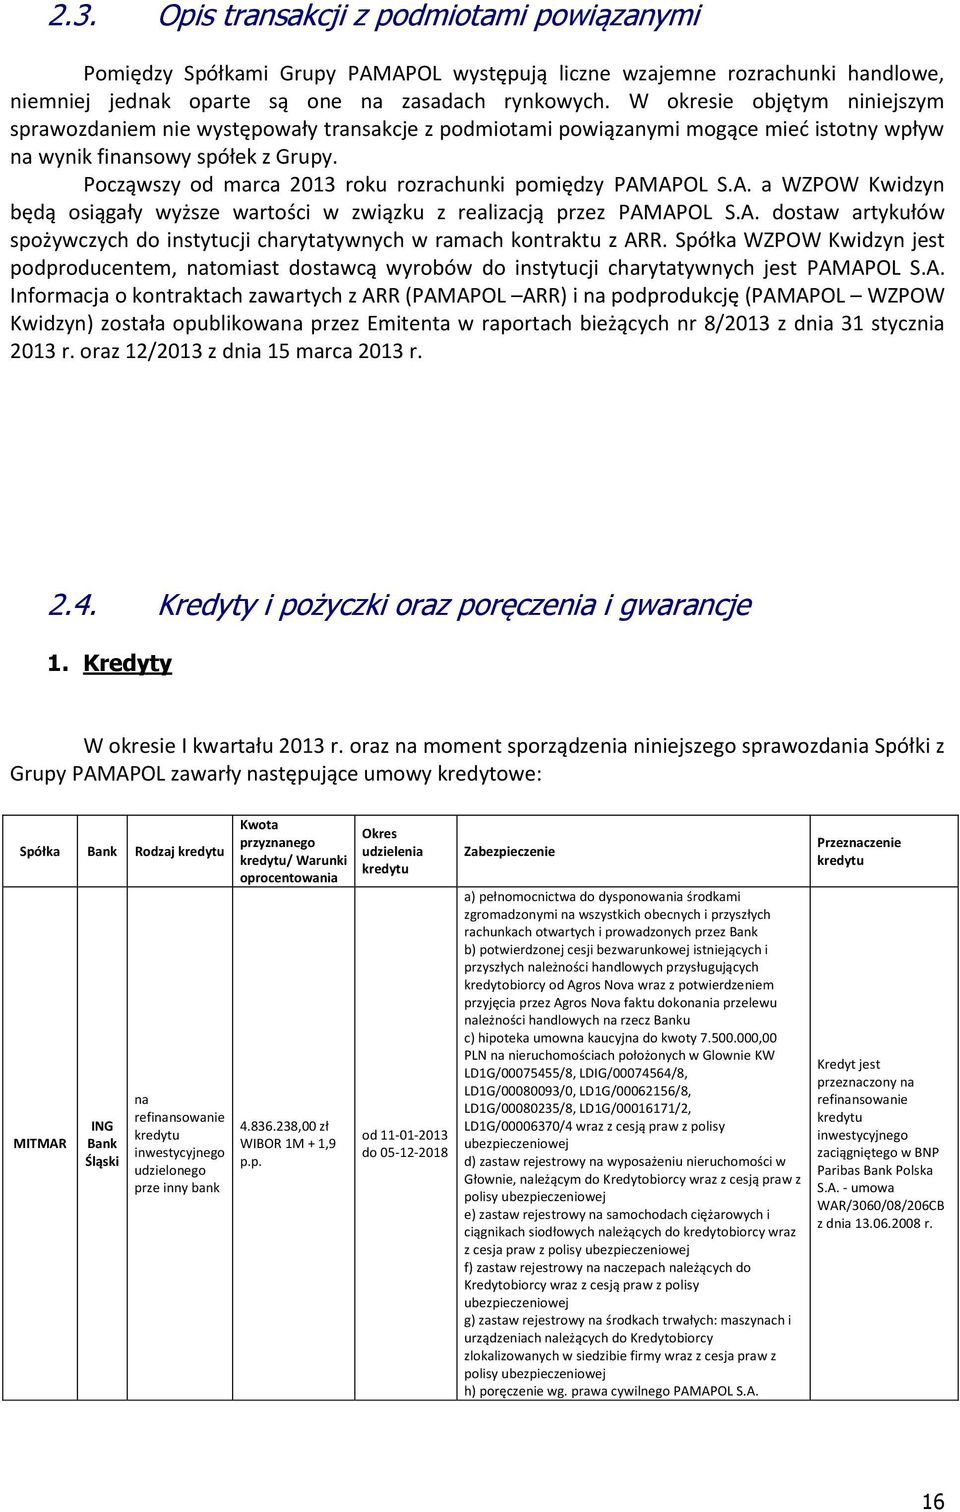 Począwszy od marca 2013 roku rozrachunki pomiędzy PAMAPOL S.A. a WZPOW Kwidzyn będą osiągały wyższe wartości w związku z realizacją przez PAMAPOL S.A. dostaw artykułów spożywczych do instytucji charytatywnych w ramach kontraktu z ARR.